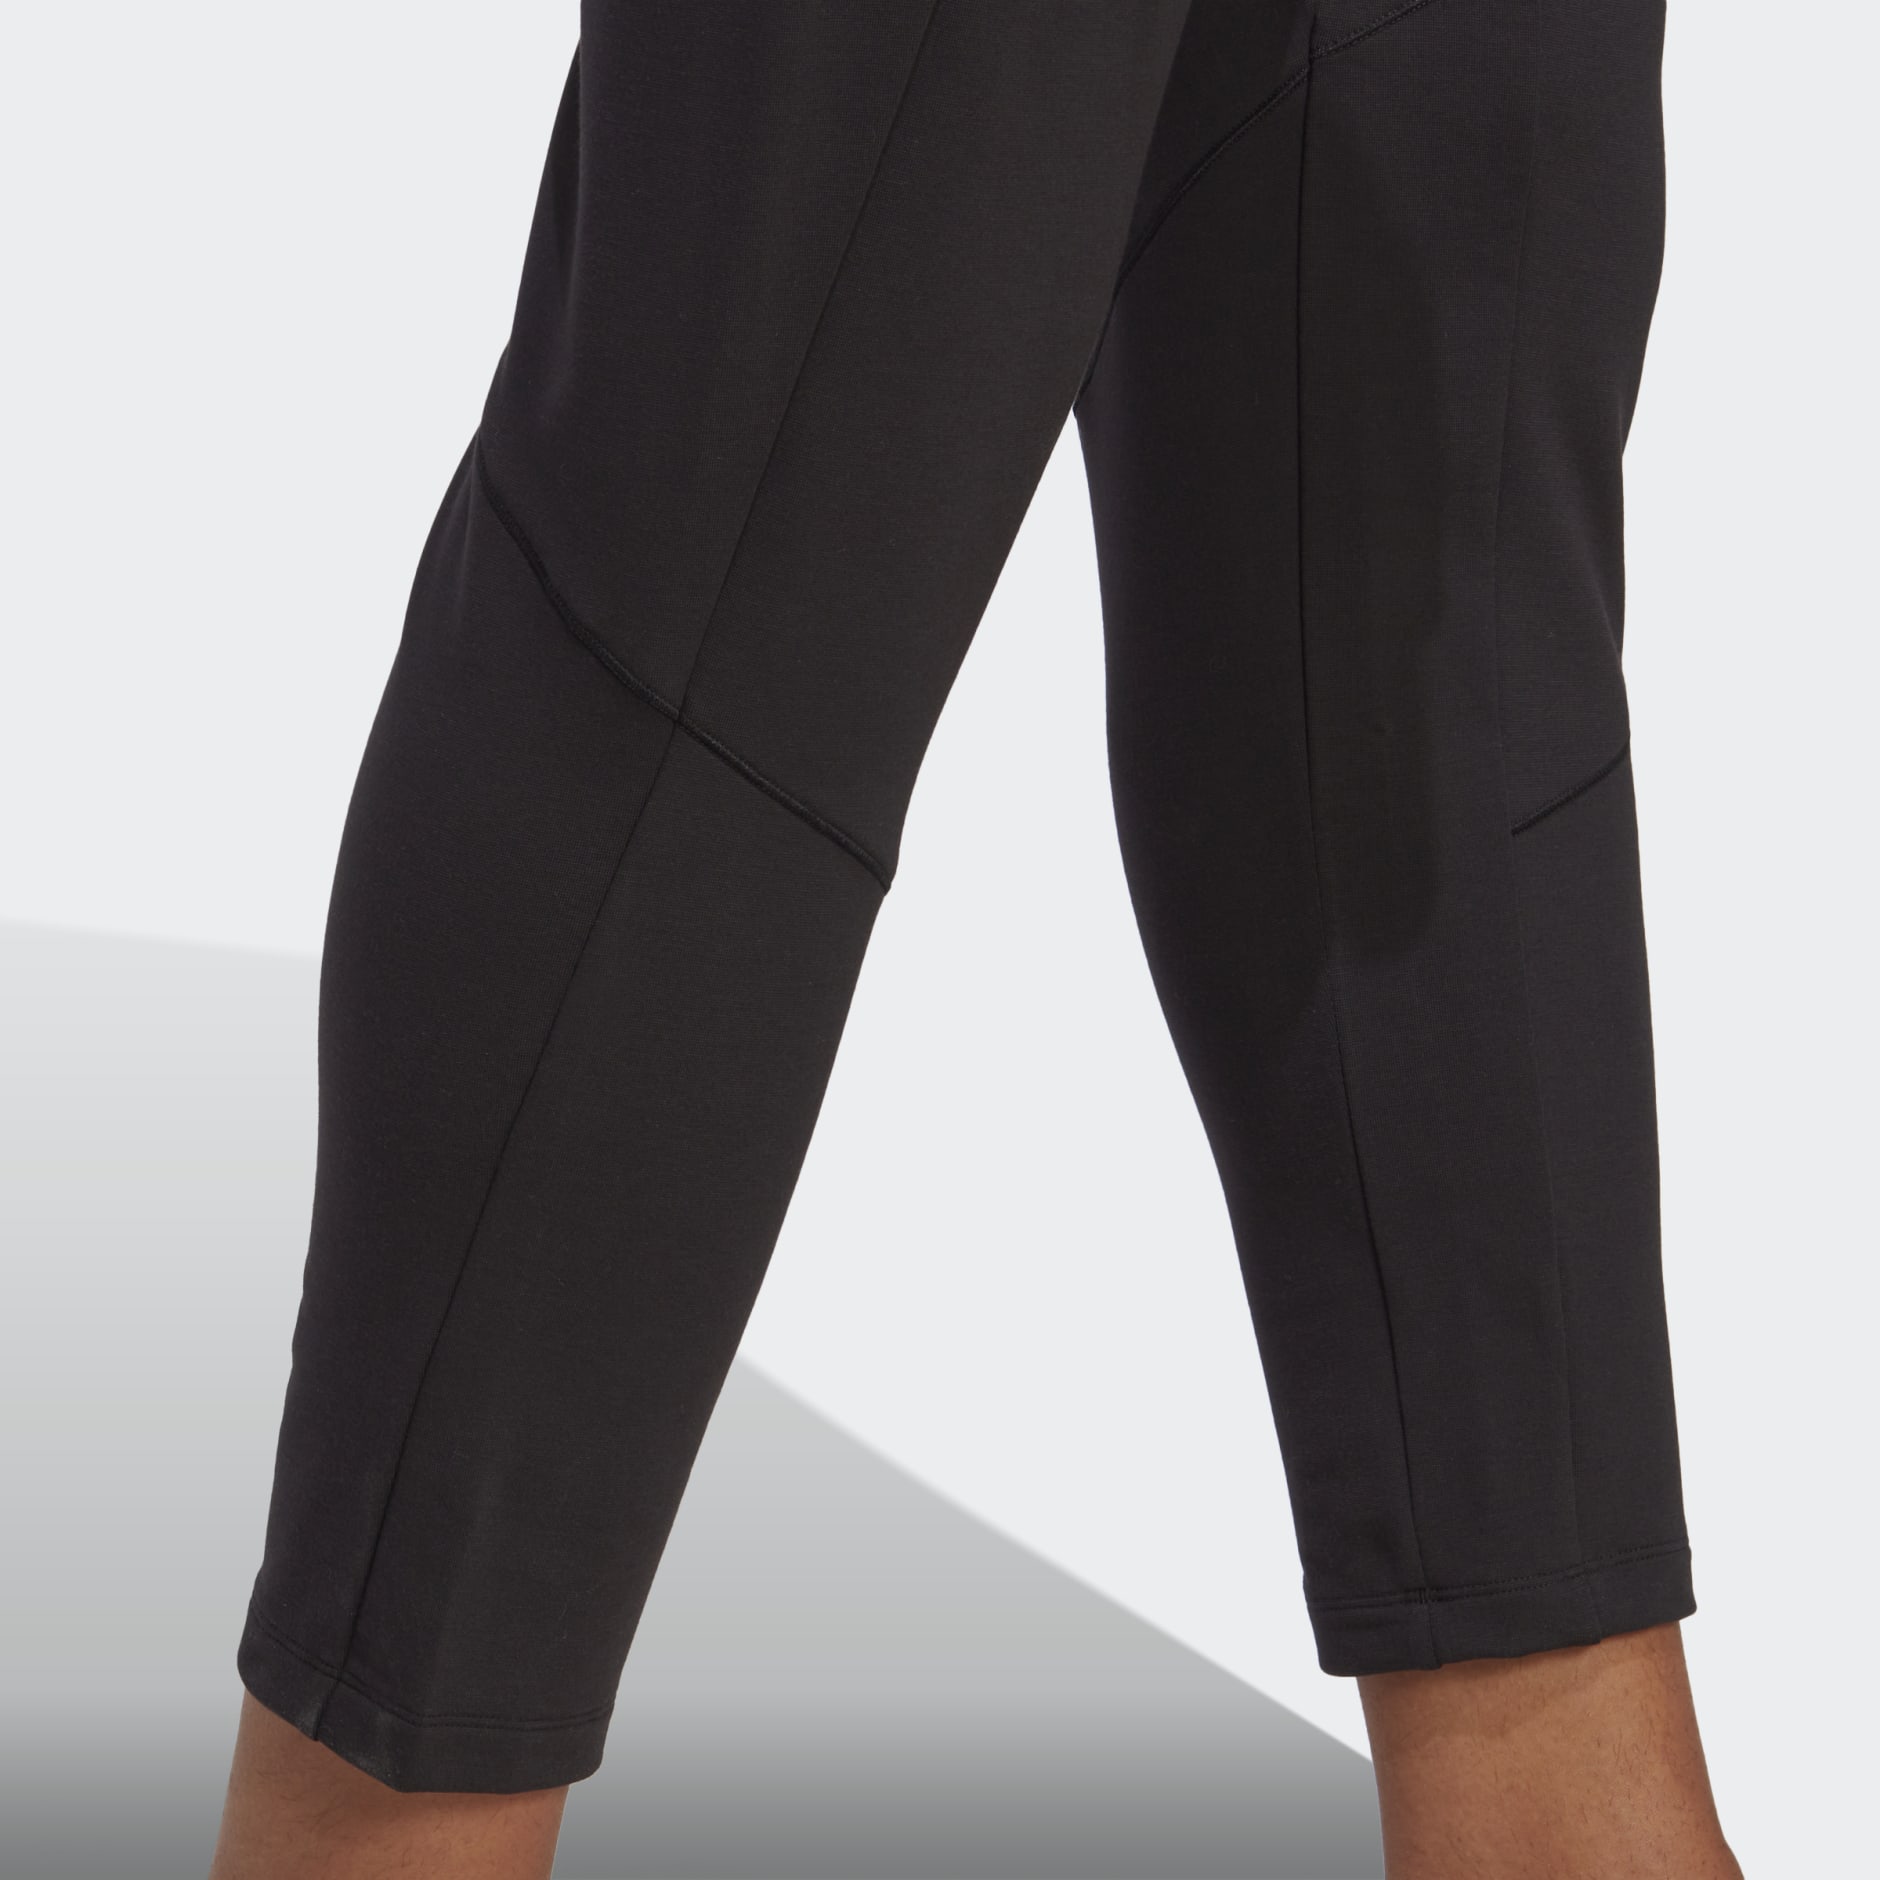 Clothing - Designed for Training Yoga 7/8 Training Pants - Black ...